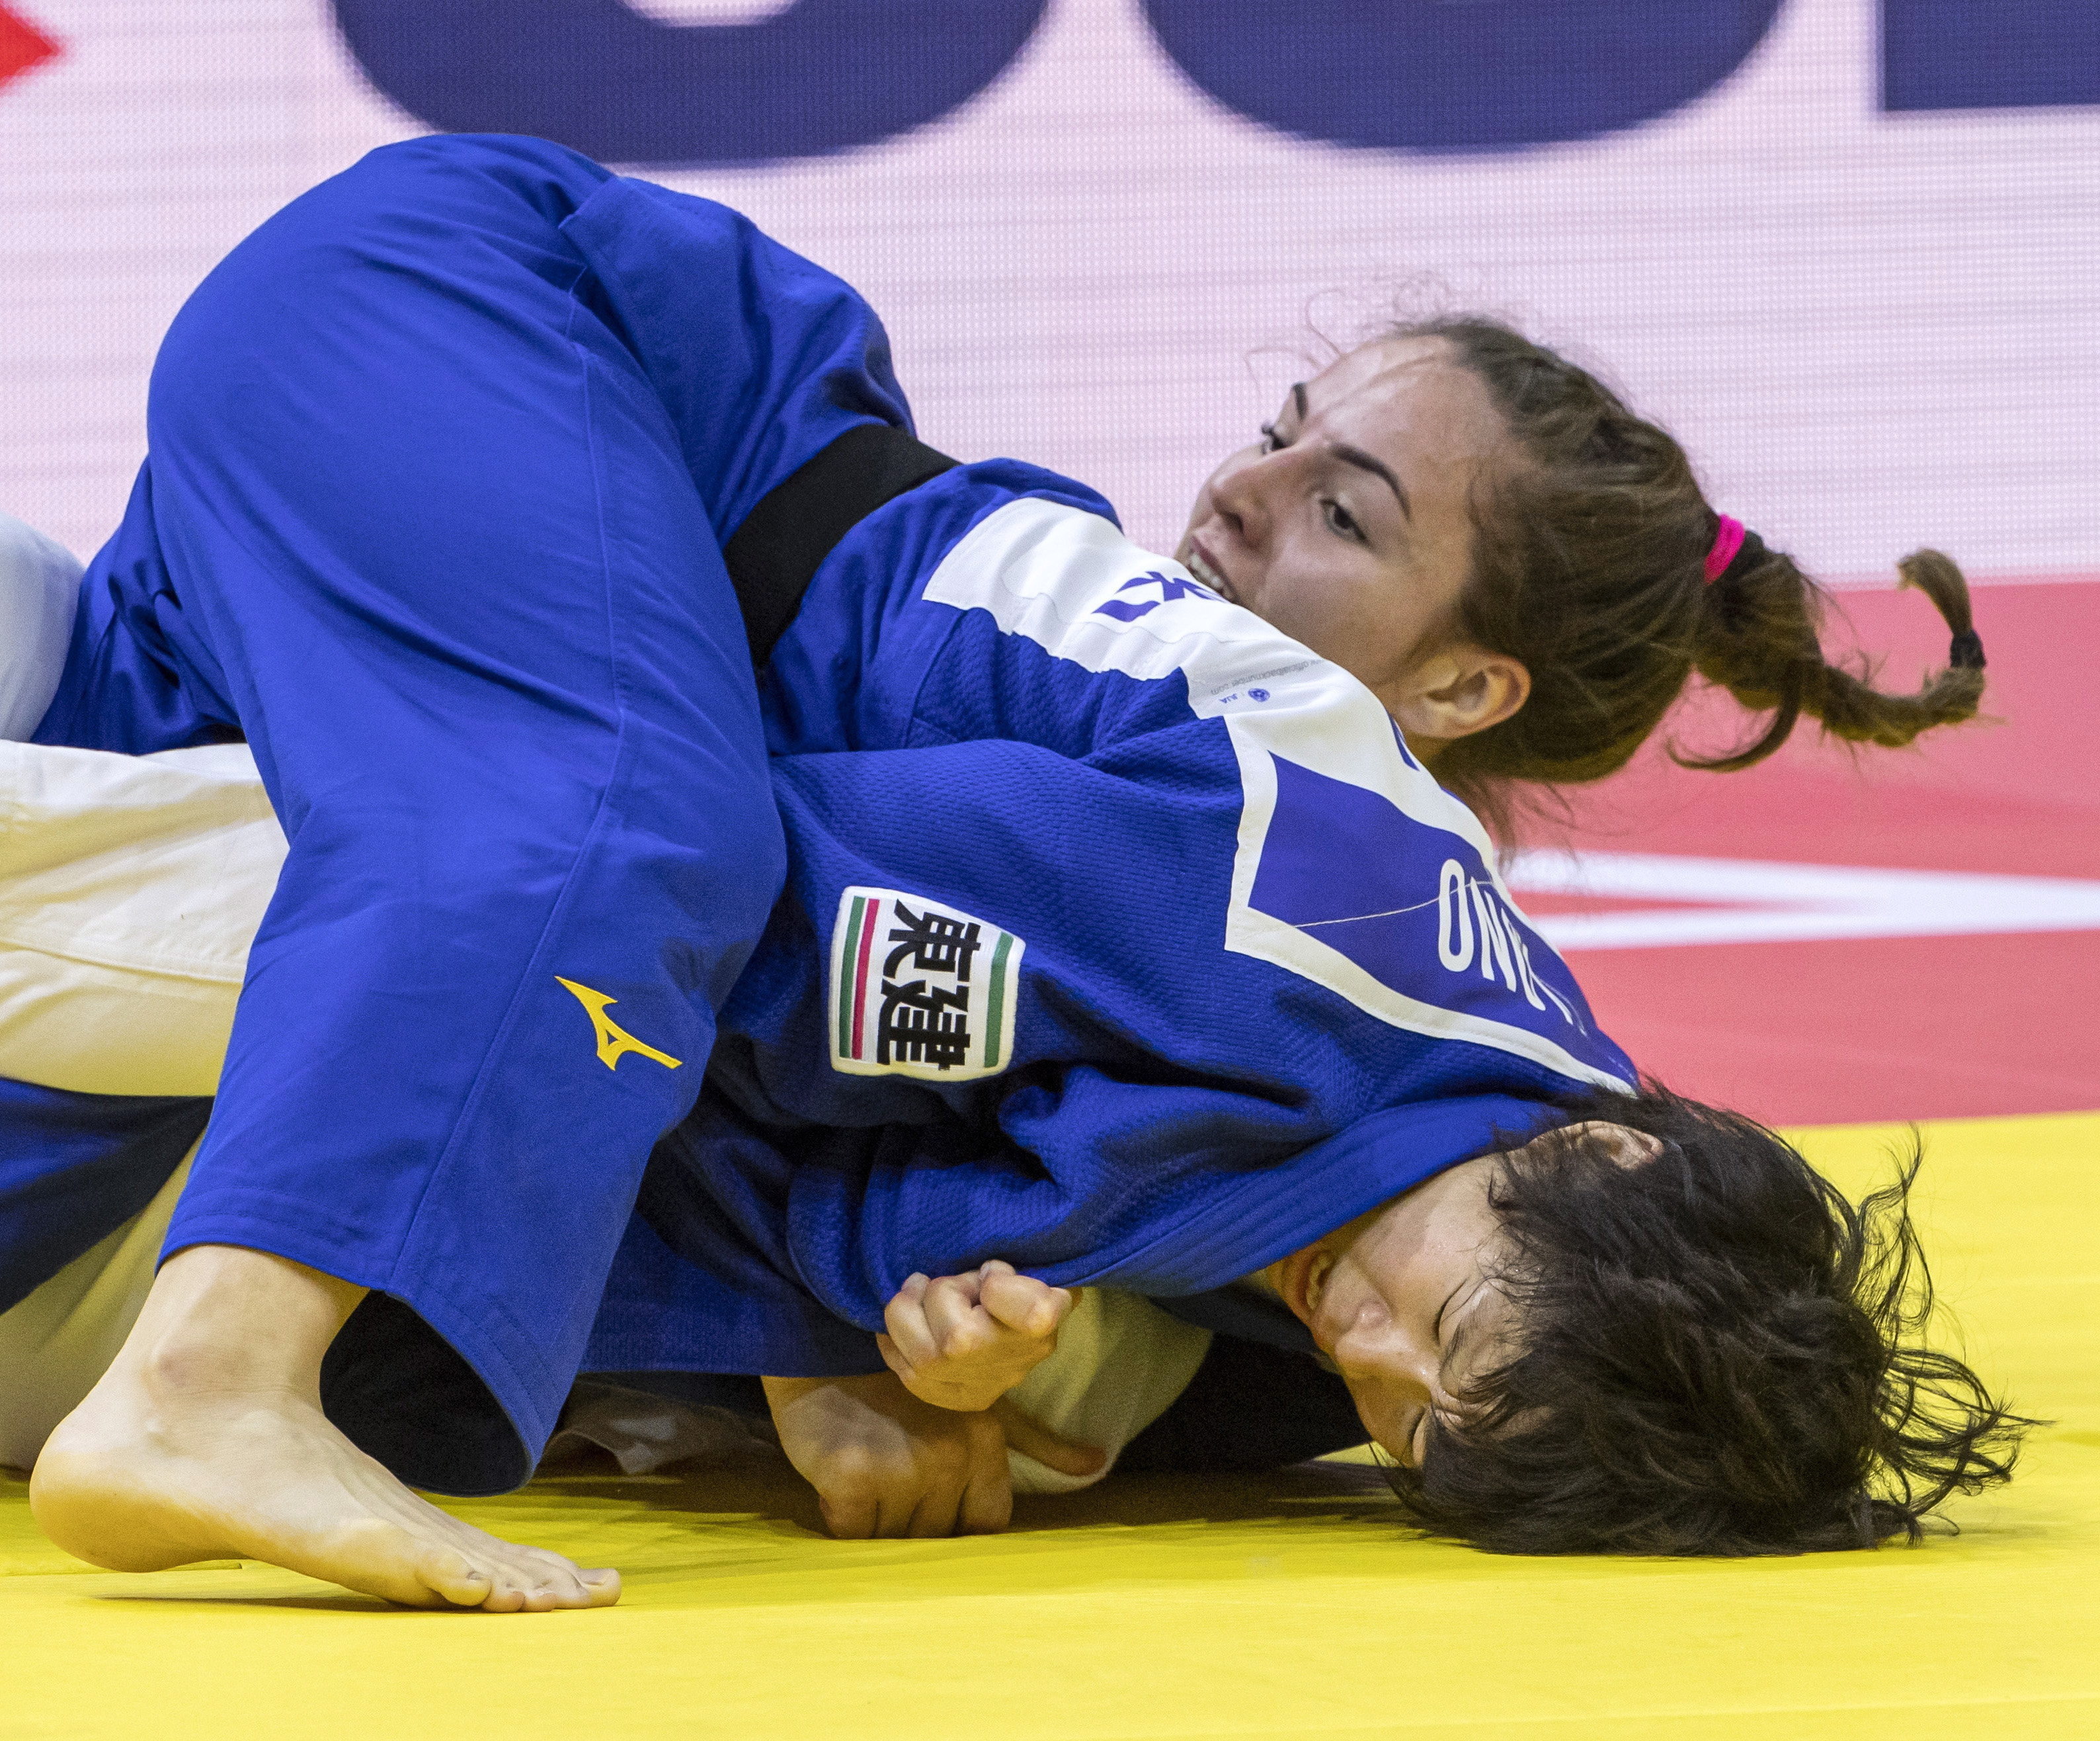 Judašici Barbara Matić osvojila zlato na svjetskom prvenstvu u judu u kategoriji do 70 kilograma u Budimpešti